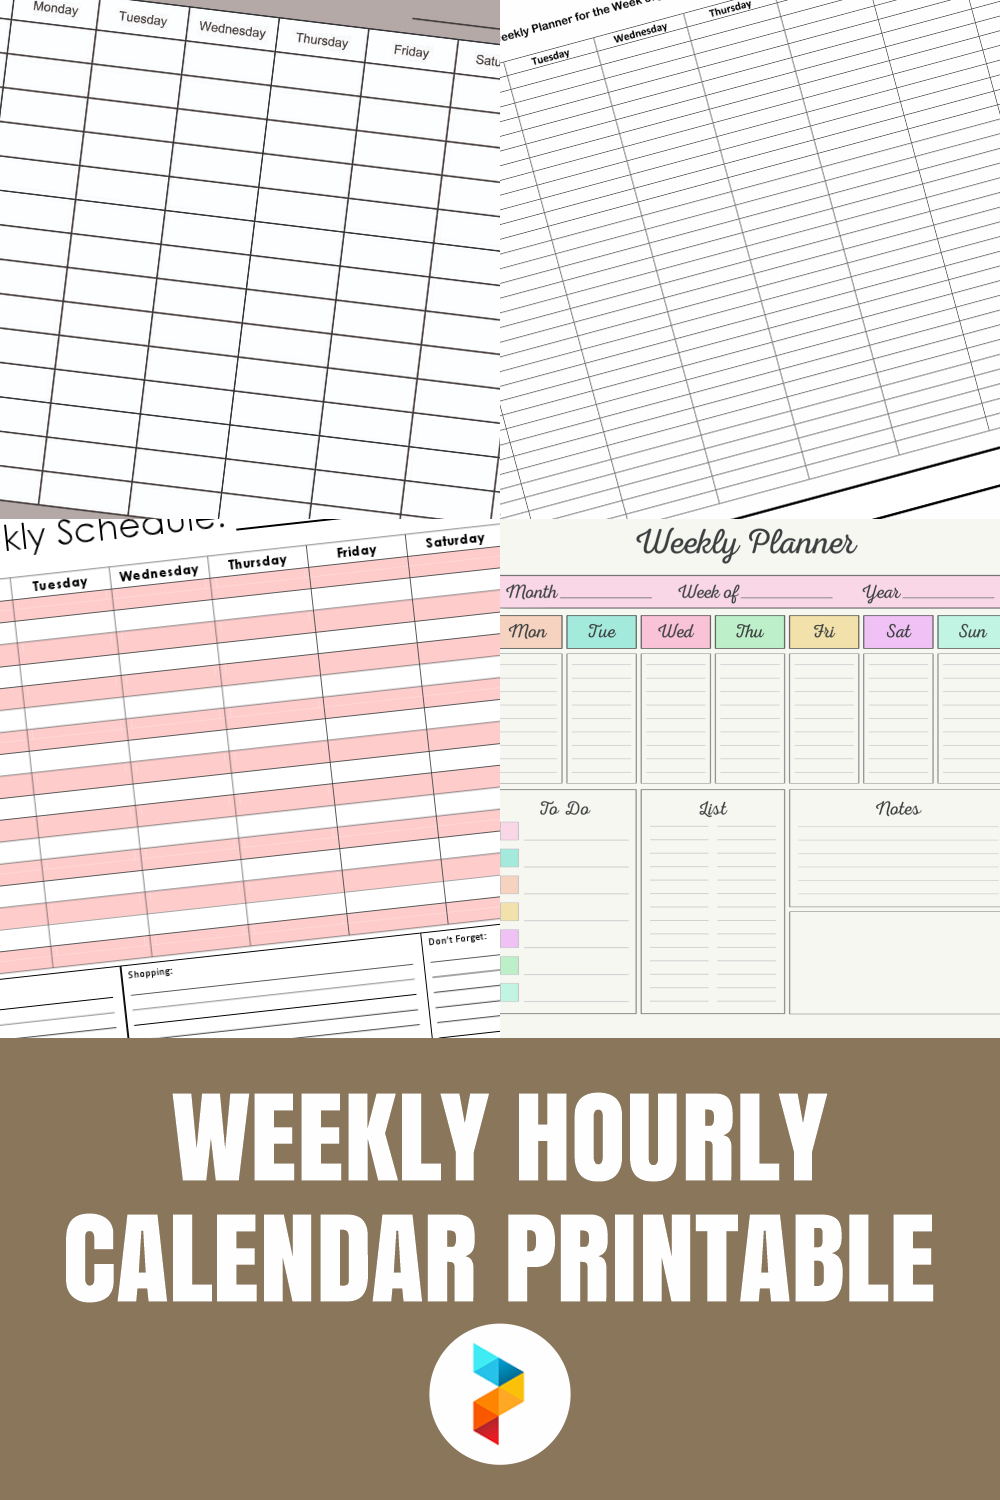 10 Best Weekly Hourly Calendar Printable Printablee 4